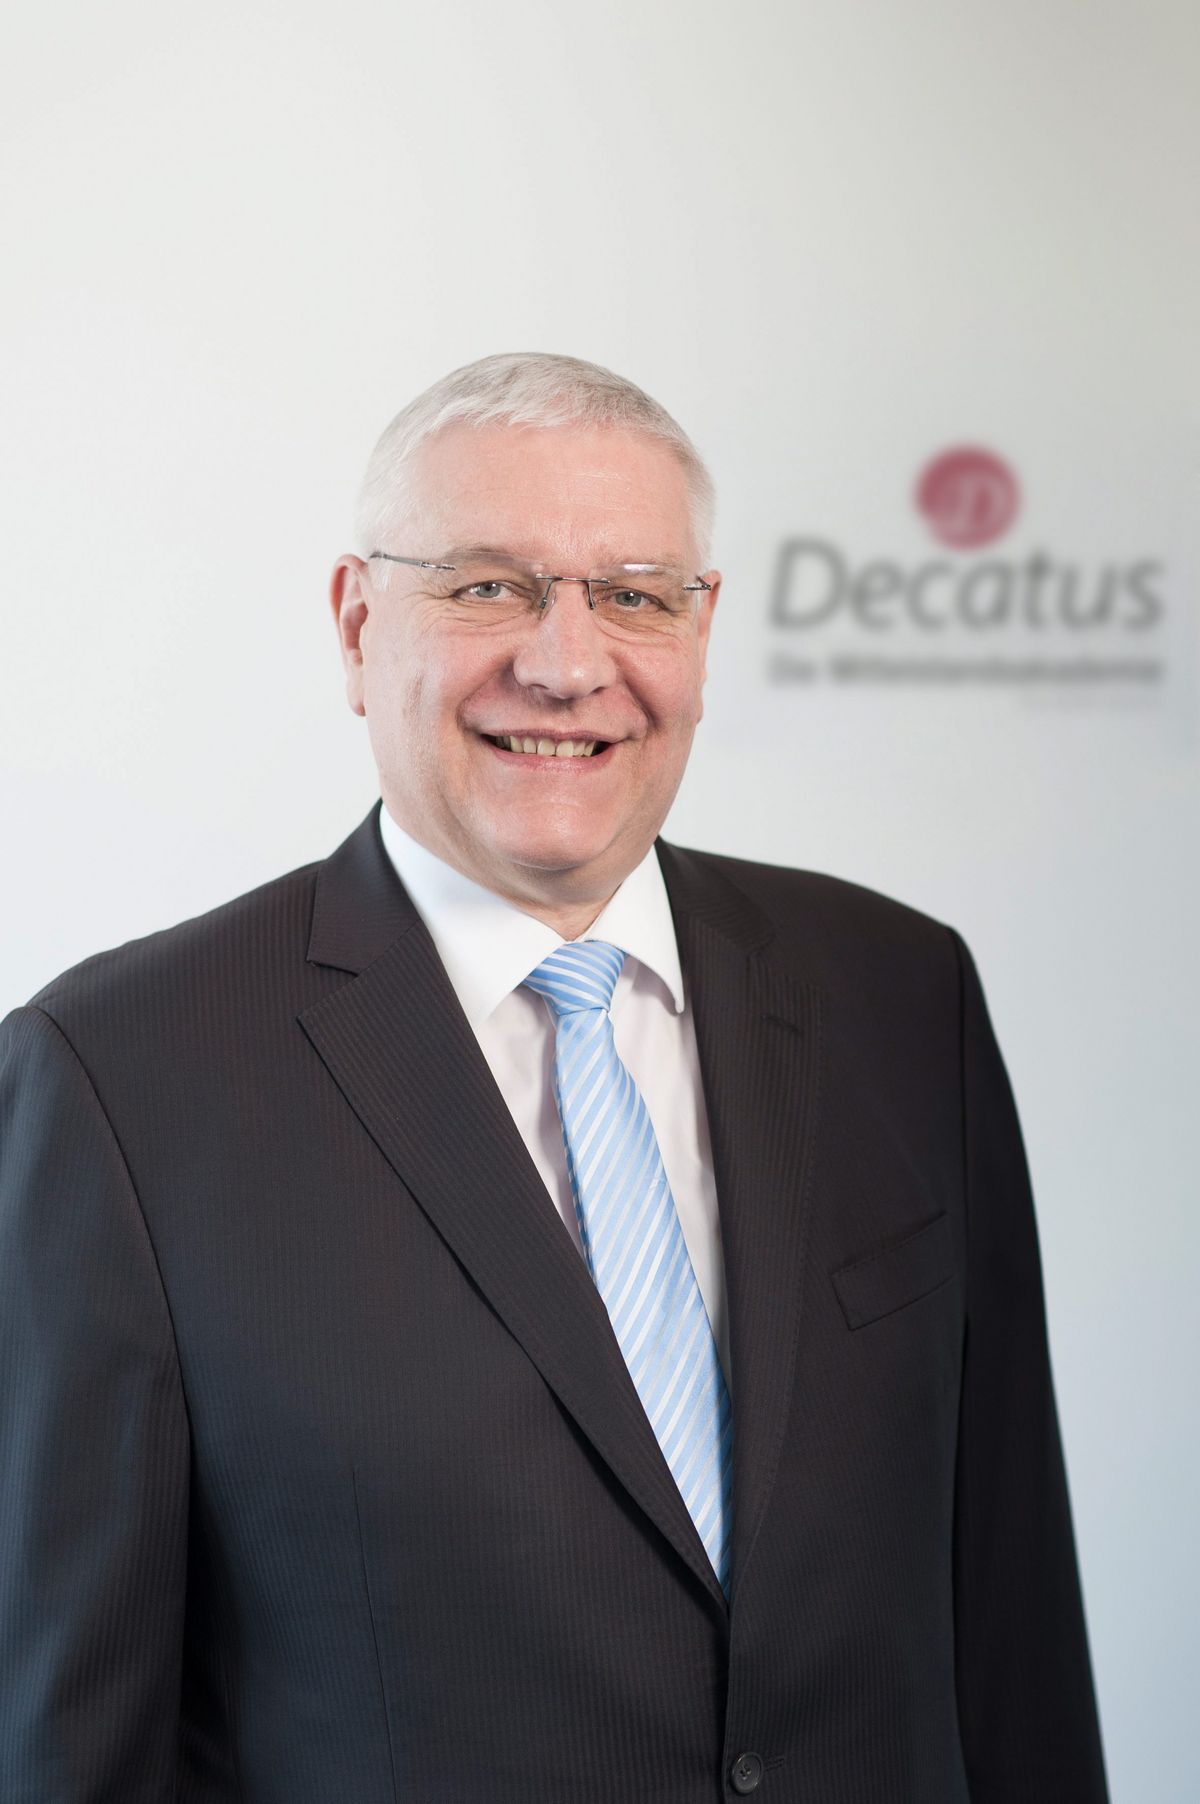 Decatus Axel Dreckschmidt